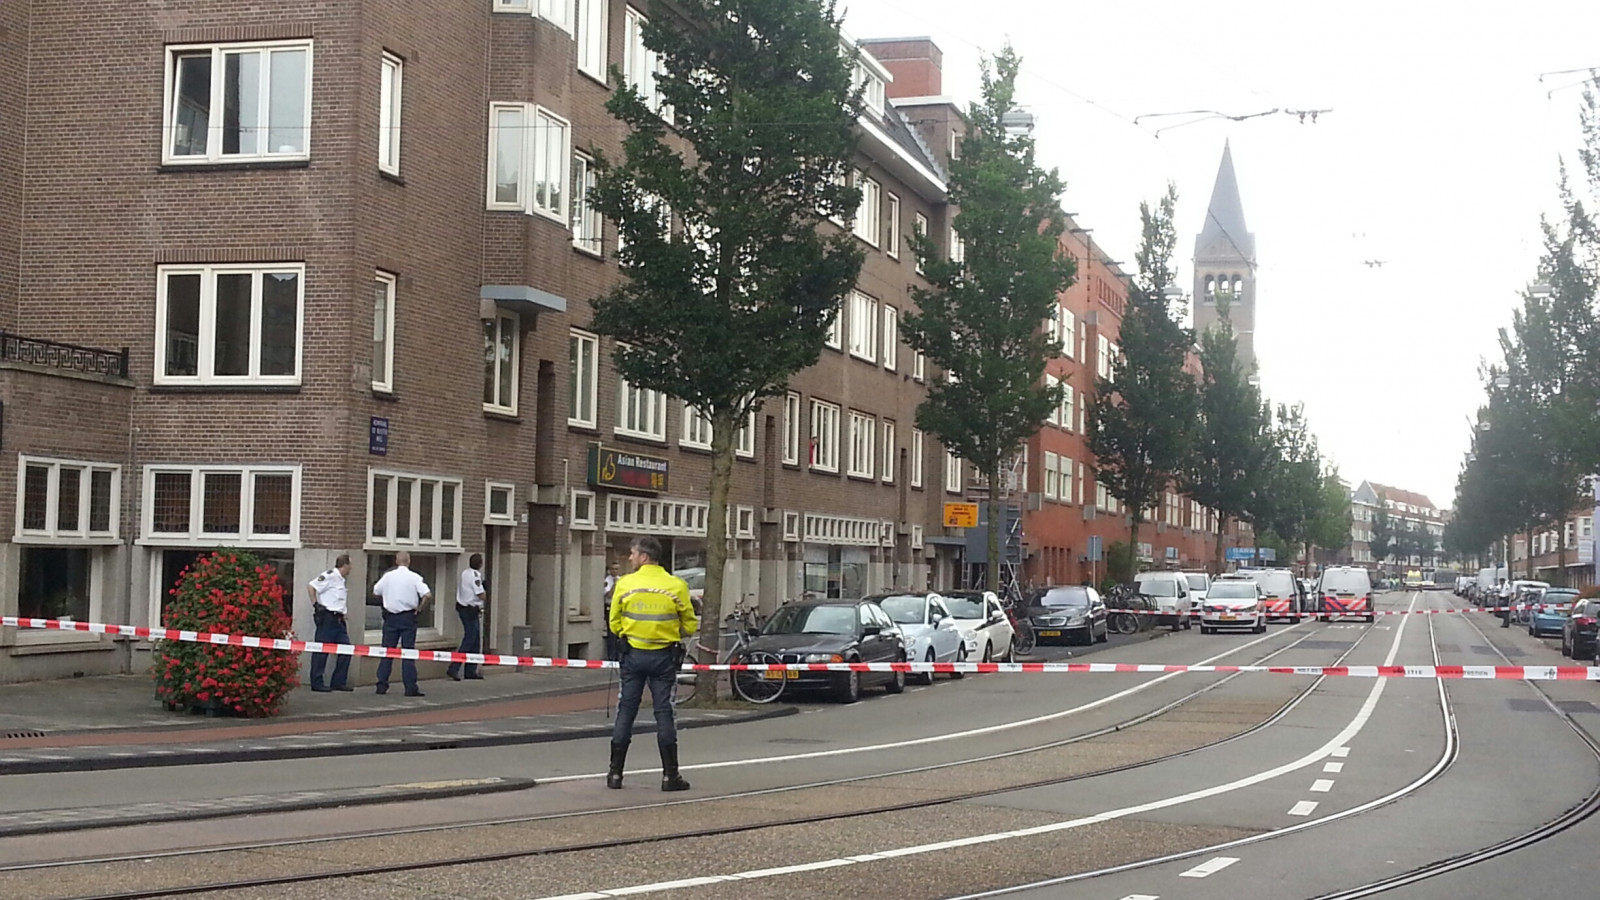 Politie haalt man uit woning Admiraal de Ruijterweg